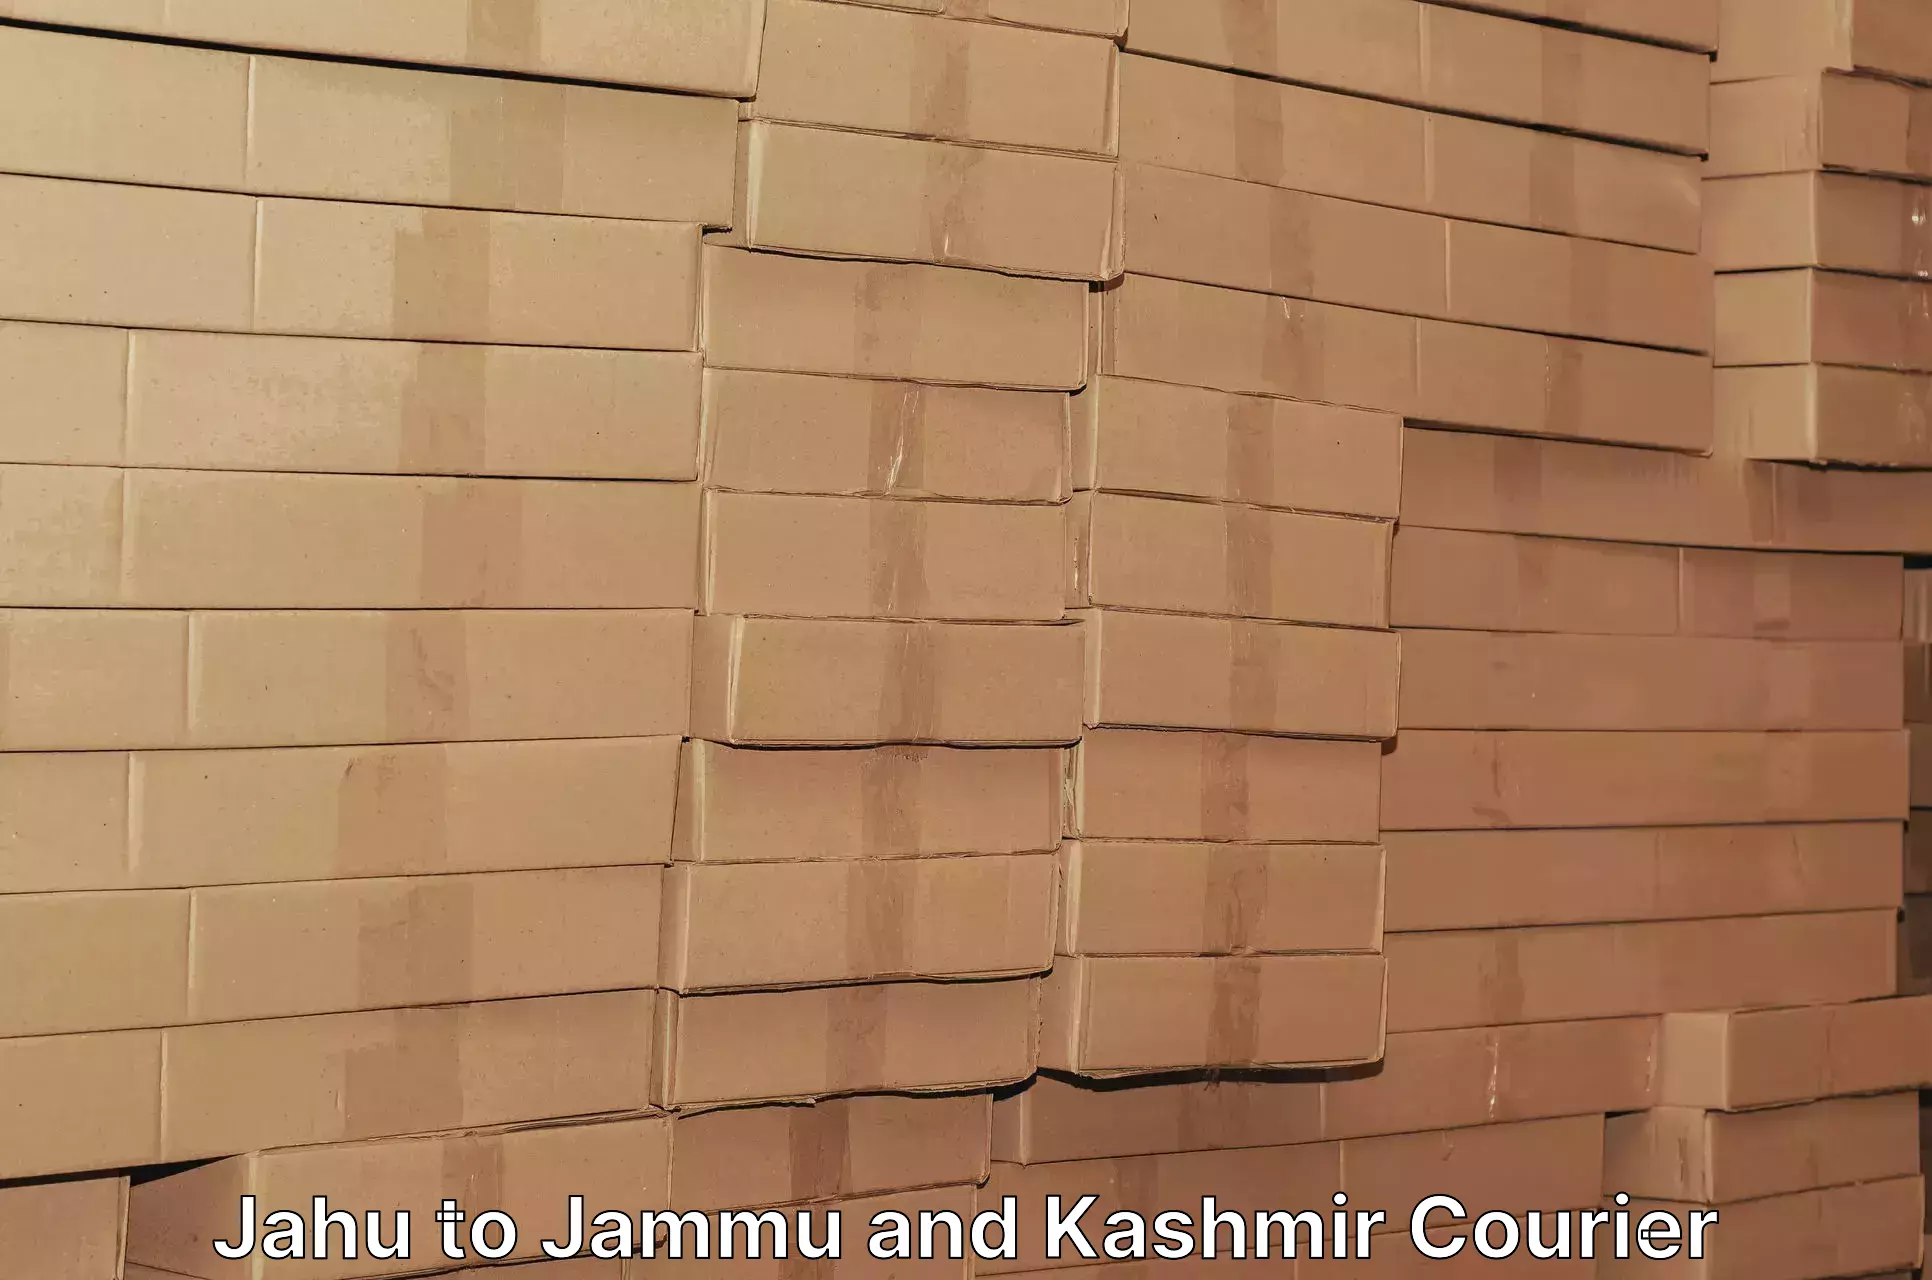 Secure shipping methods Jahu to Sunderbani